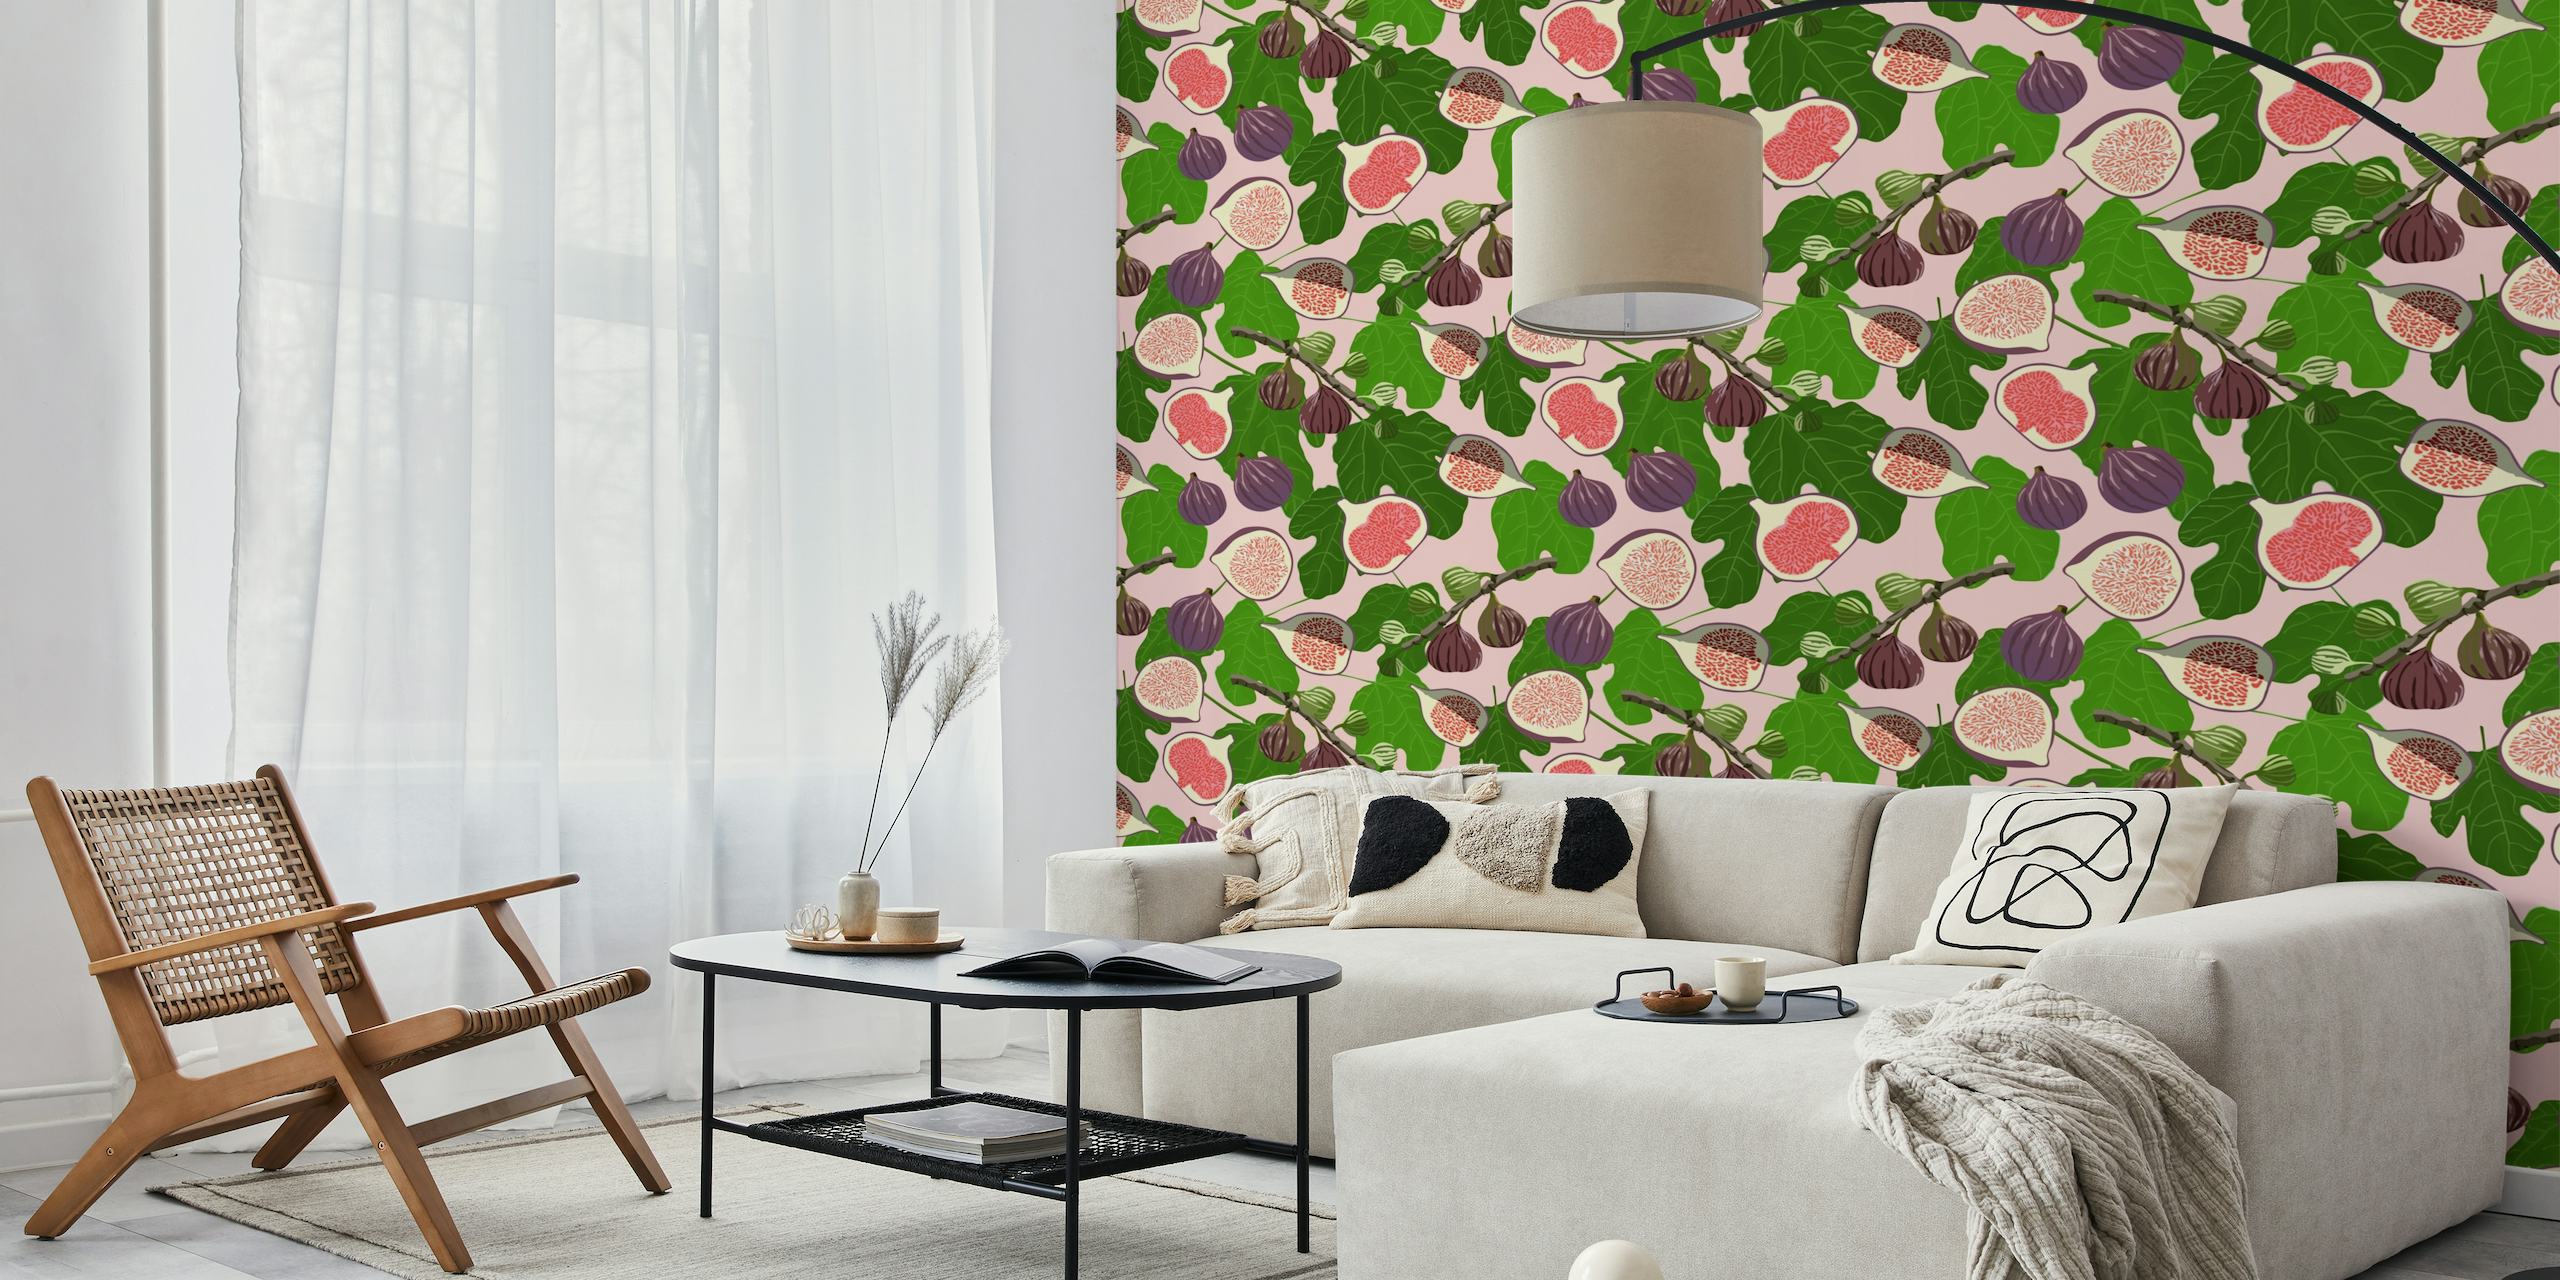 Helles und einladendes Wandbild „Figs and Leaves“ mit rosa und violetten Feigen inmitten eines grünen Laubmusters